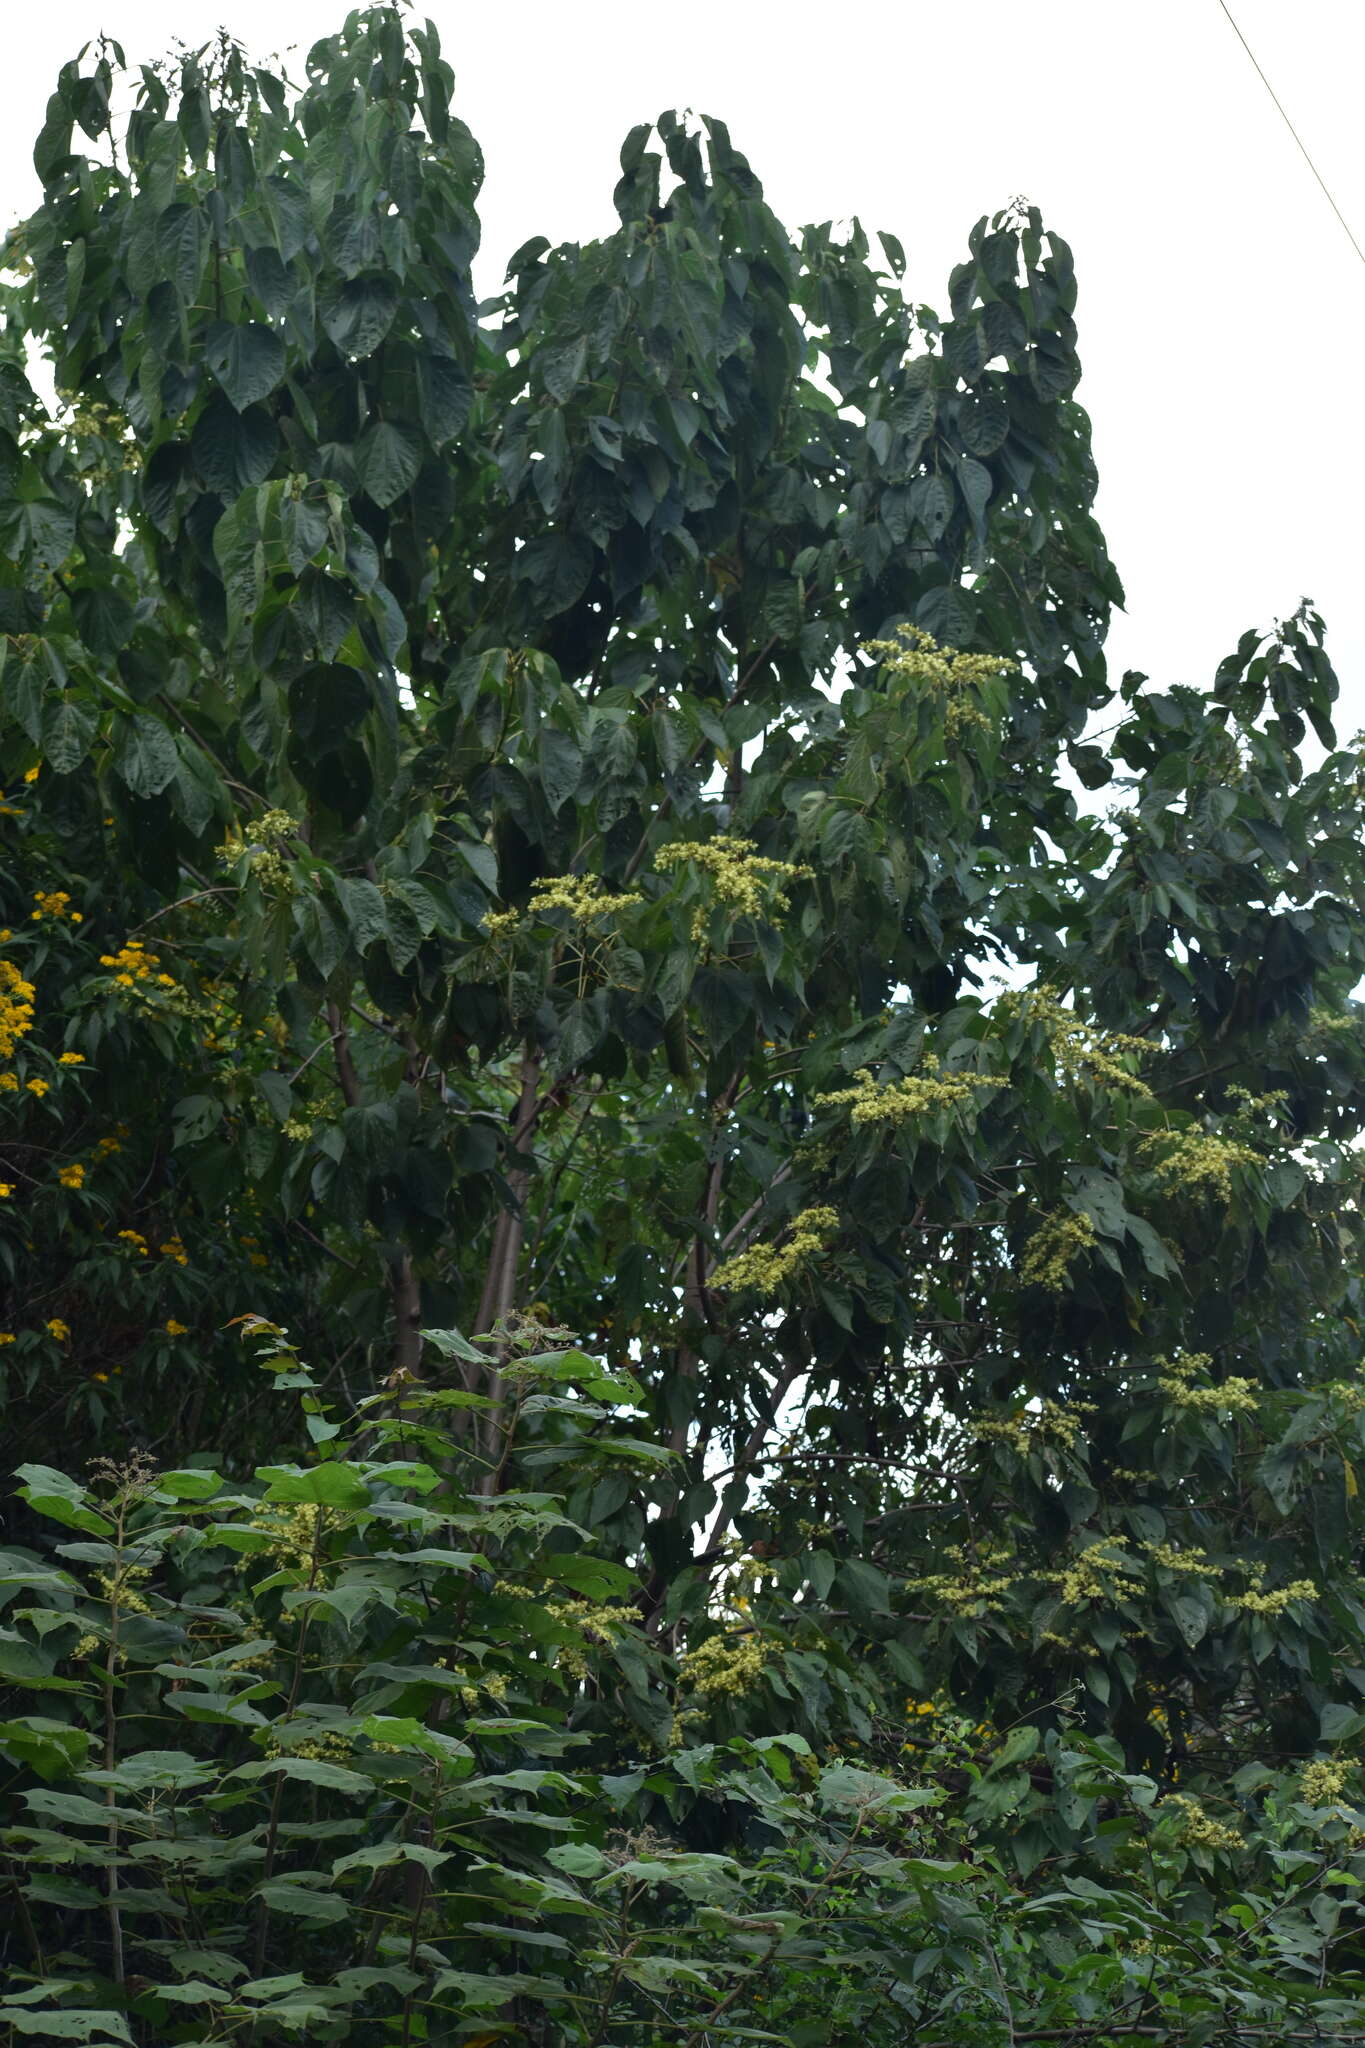 Image of Heliocarpus pallidus Rose